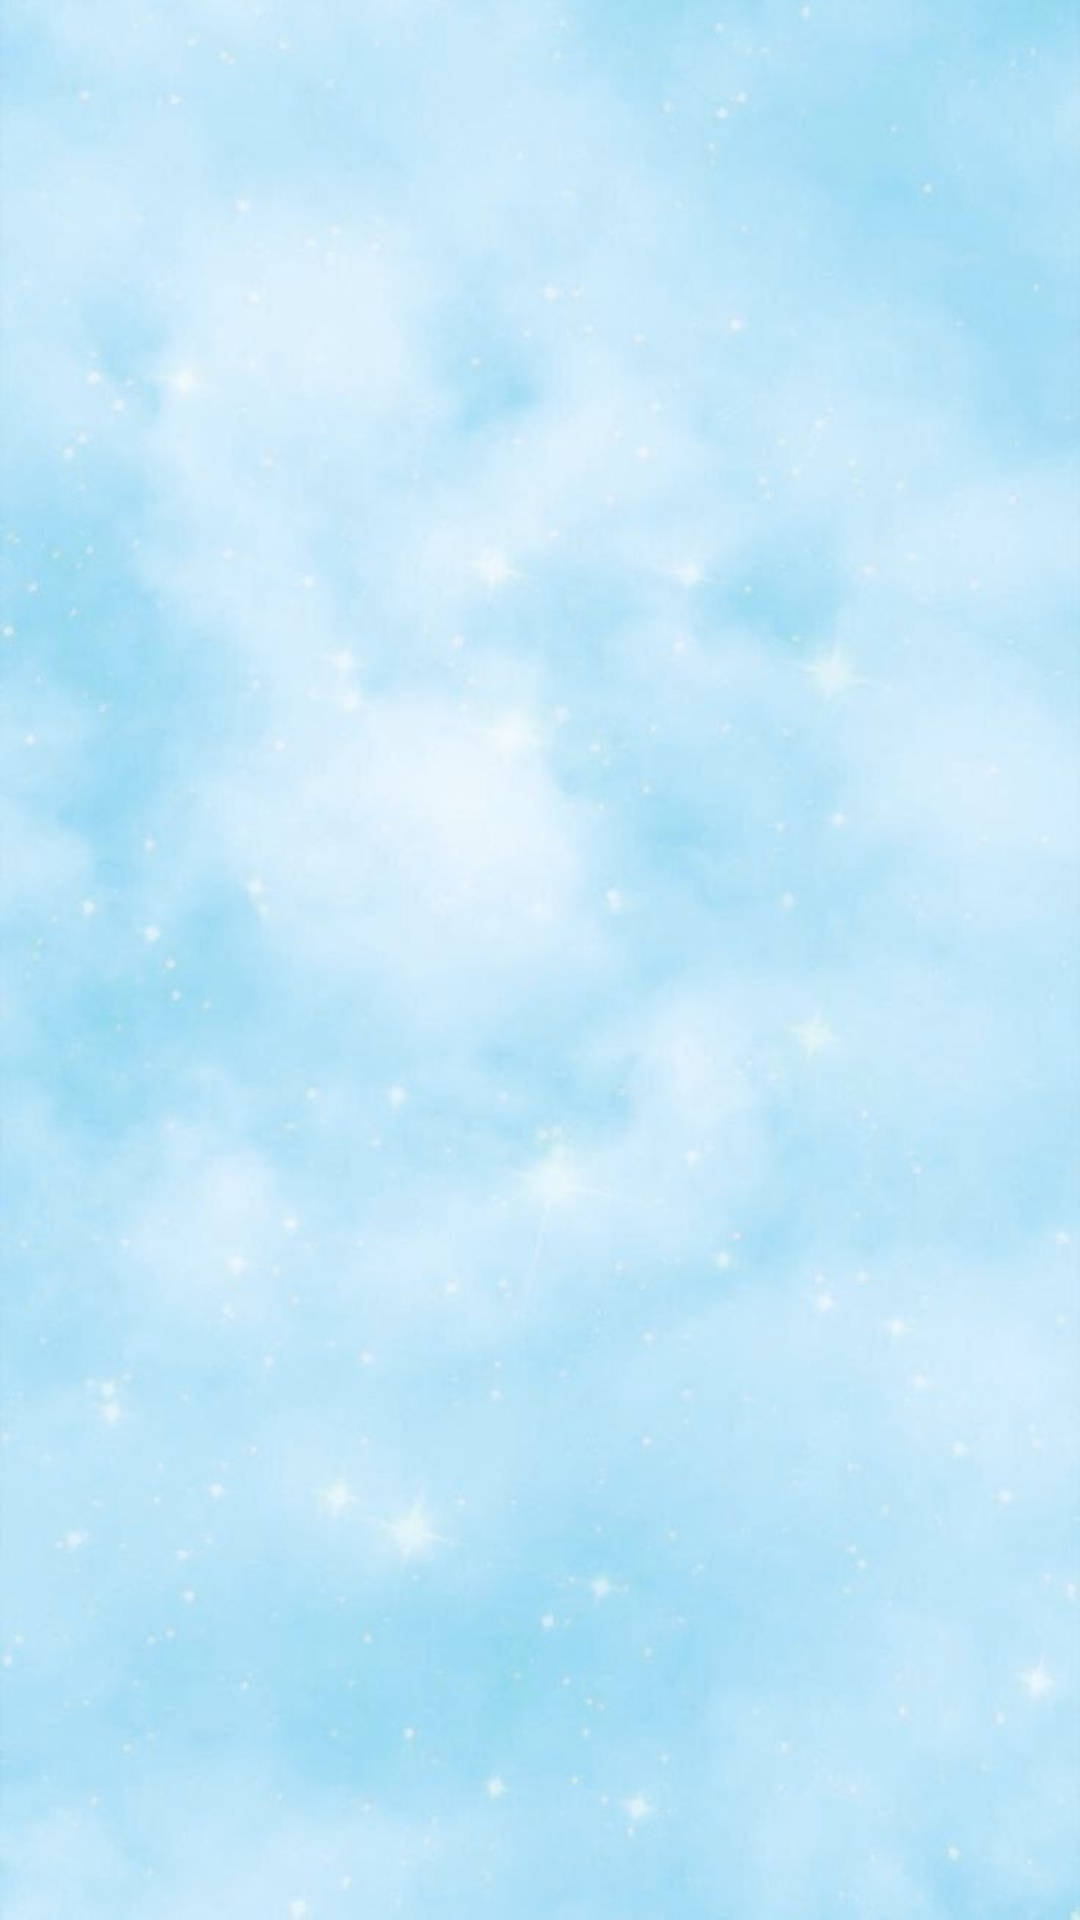 Enfrisk Och Lugnande Ljusblå Påminner Oss Om Att Ta Det Lugnt Och Njuta Av De Enkla Sakerna. Wallpaper